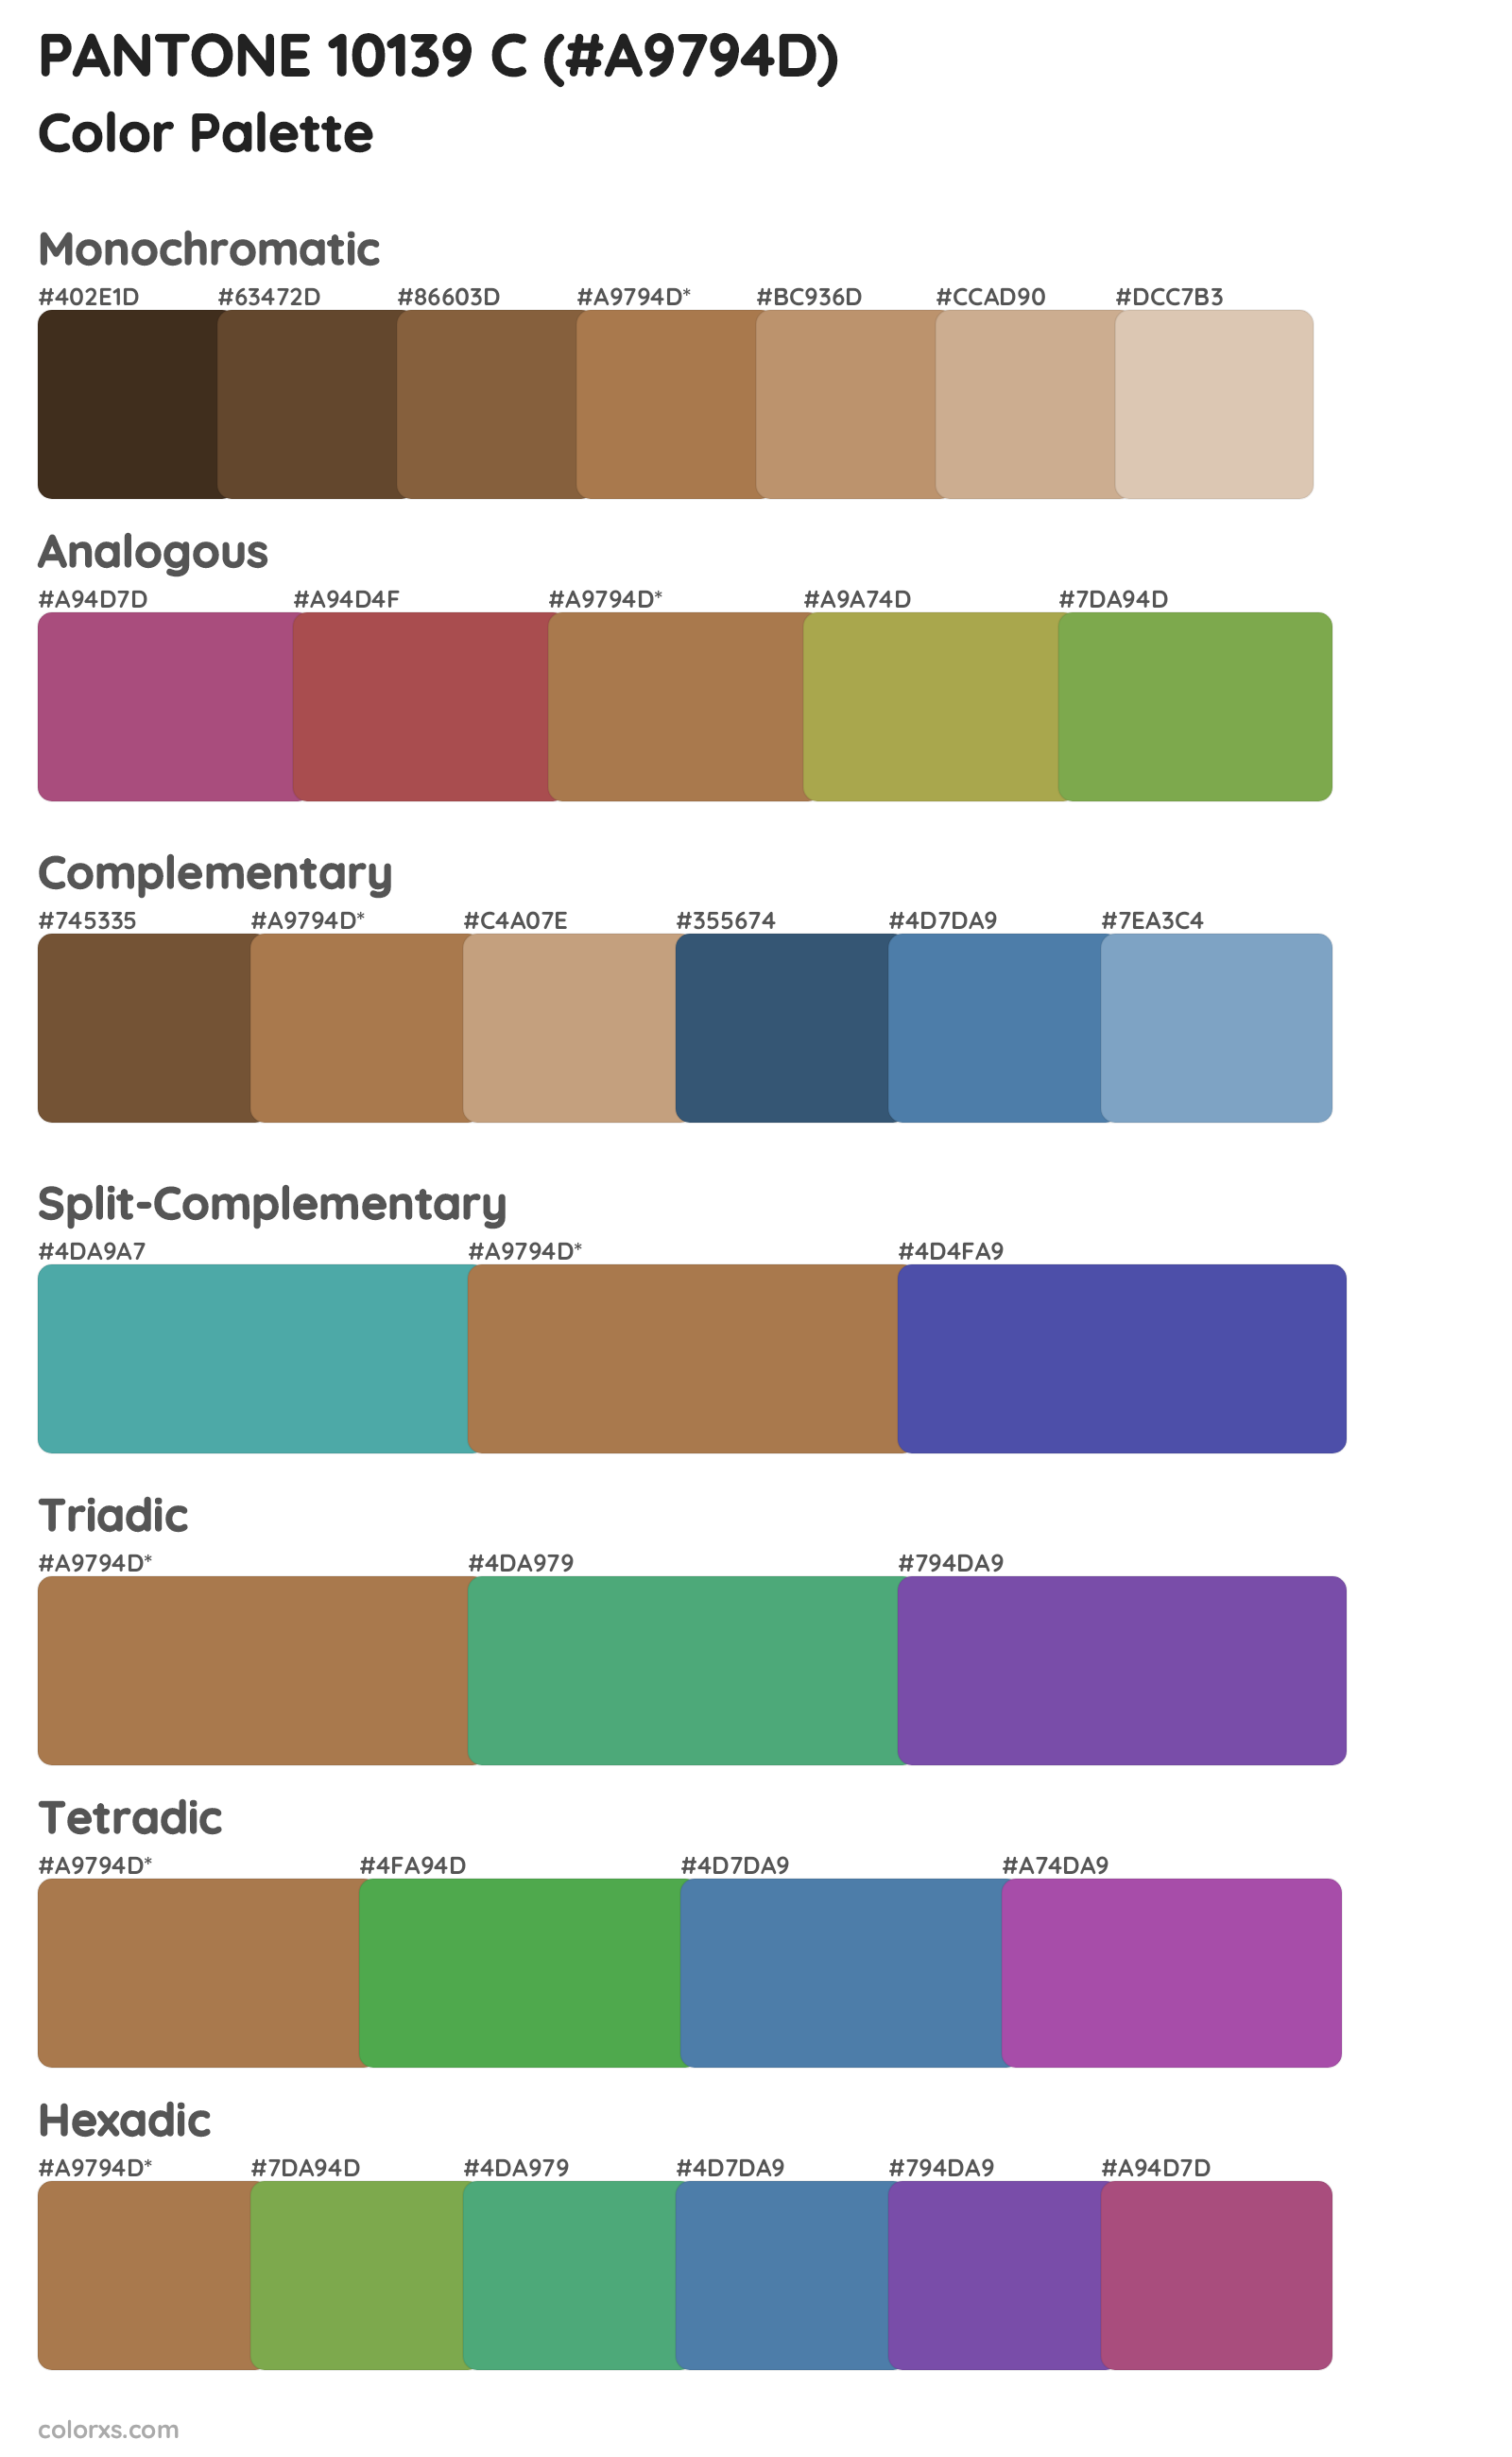 PANTONE 10139 C Color Scheme Palettes